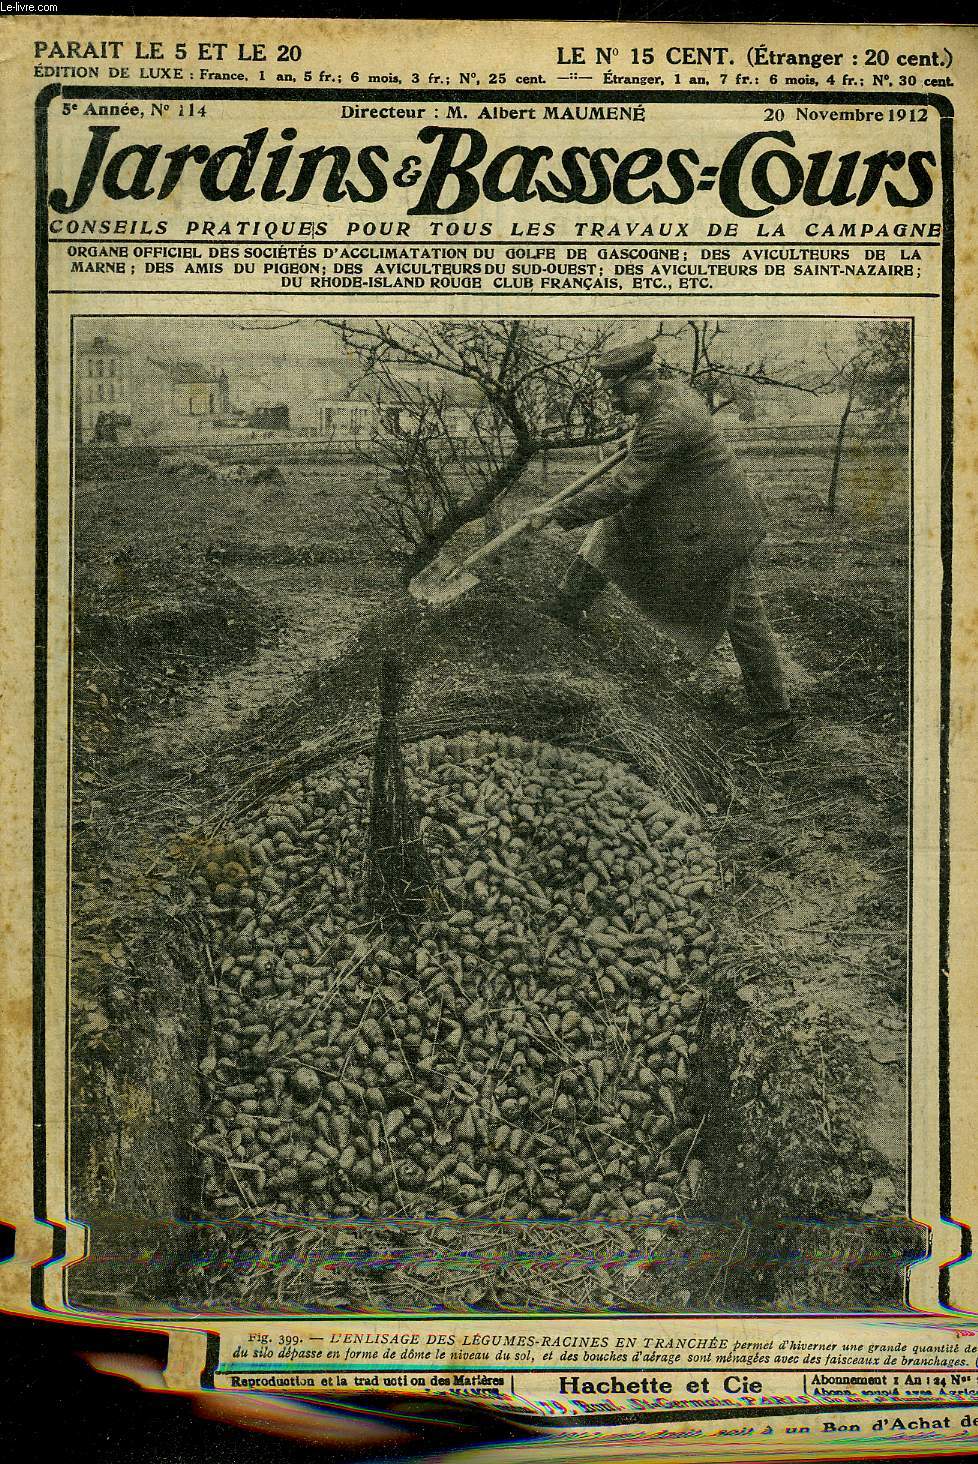 JARDINS ET BASSES-COURS N 114 5E ANNEE 20 NOVEMBRE 1912 - Garantissez vos lgumes avec des feuilles - crez des jardins fruitiers de rapport - assurez la parure printanire du jardin - rosiers greffes sur racines d'glantiers etc.